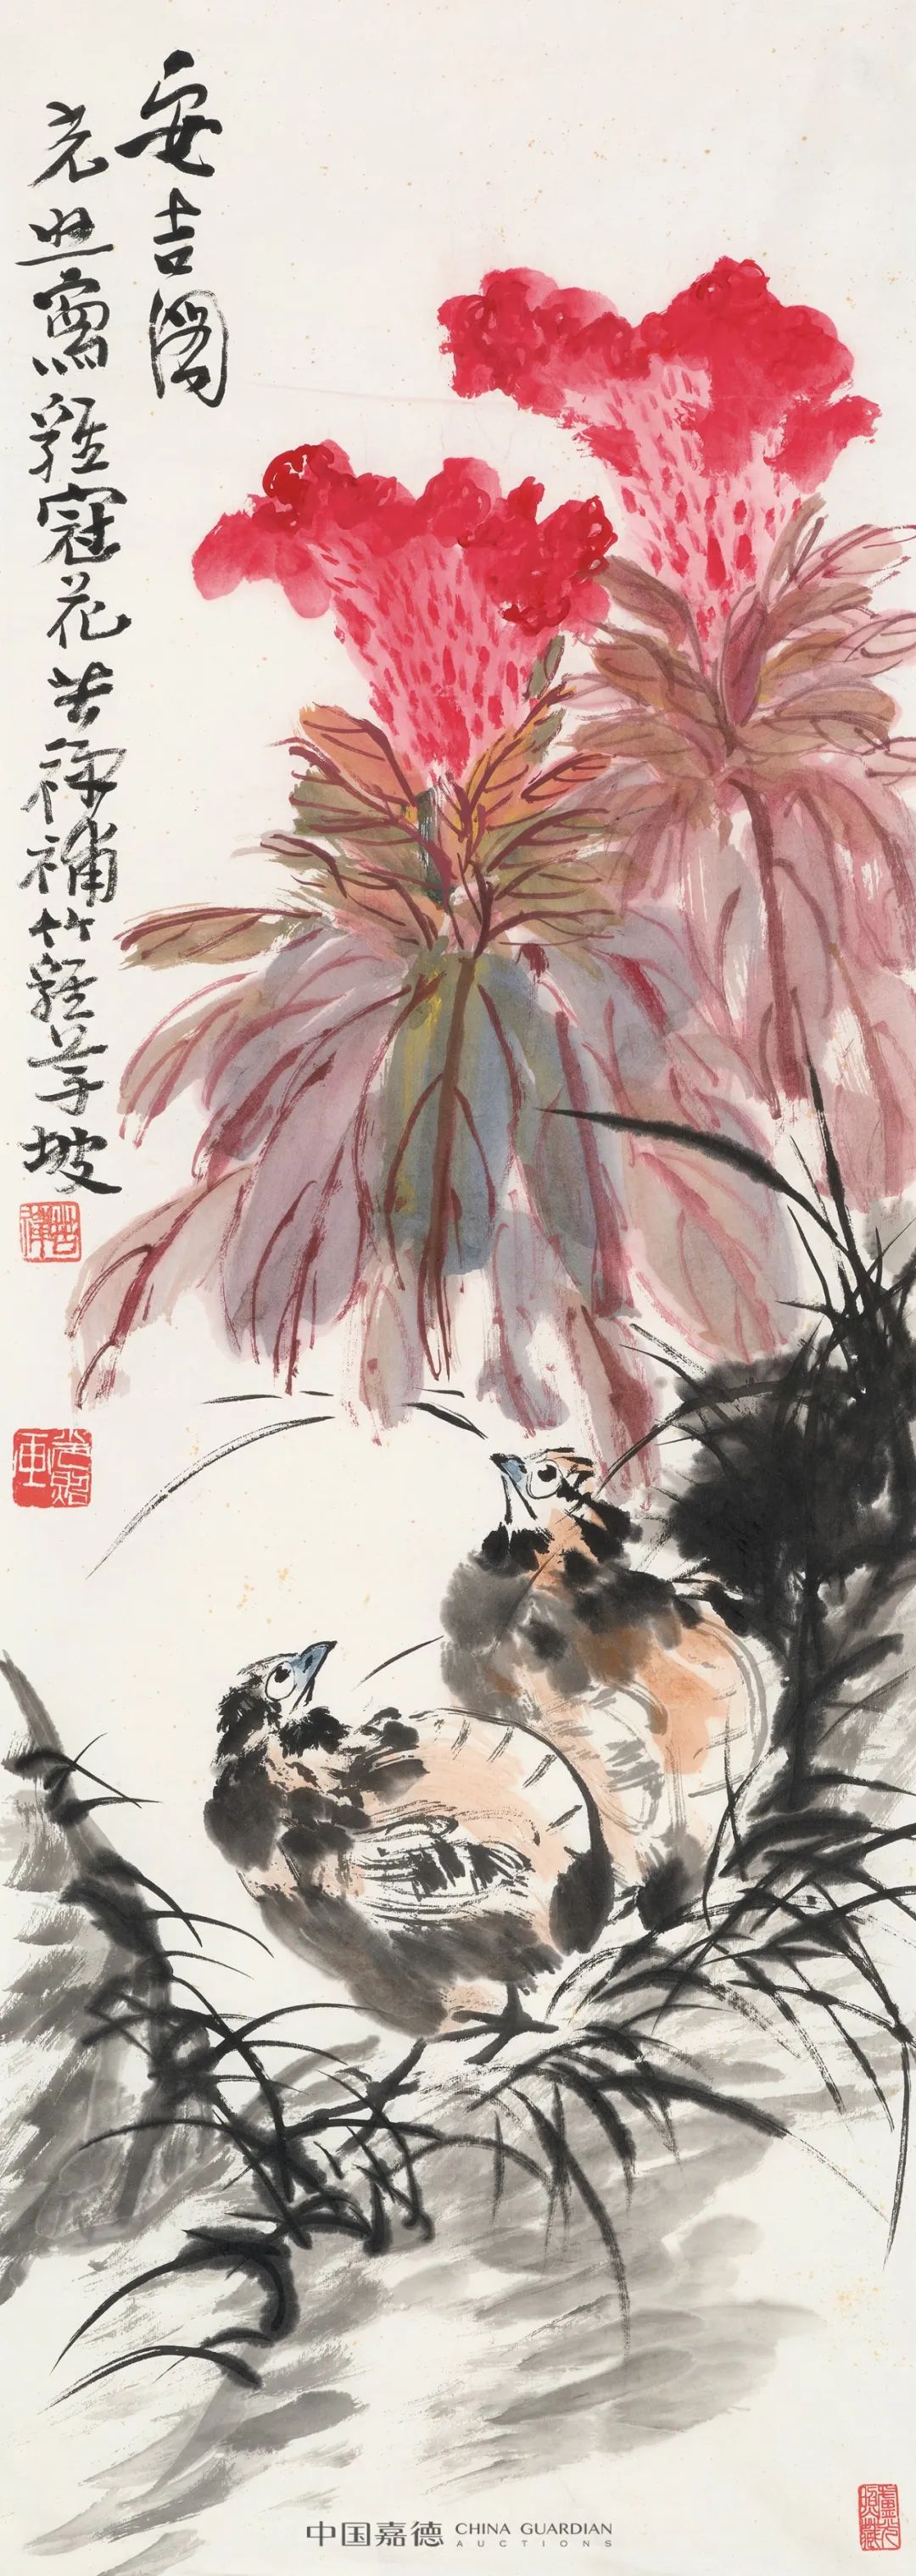 自家有此好丹青——《缤纷集》、《中国近现代书画》中的家珍专题丨中国 